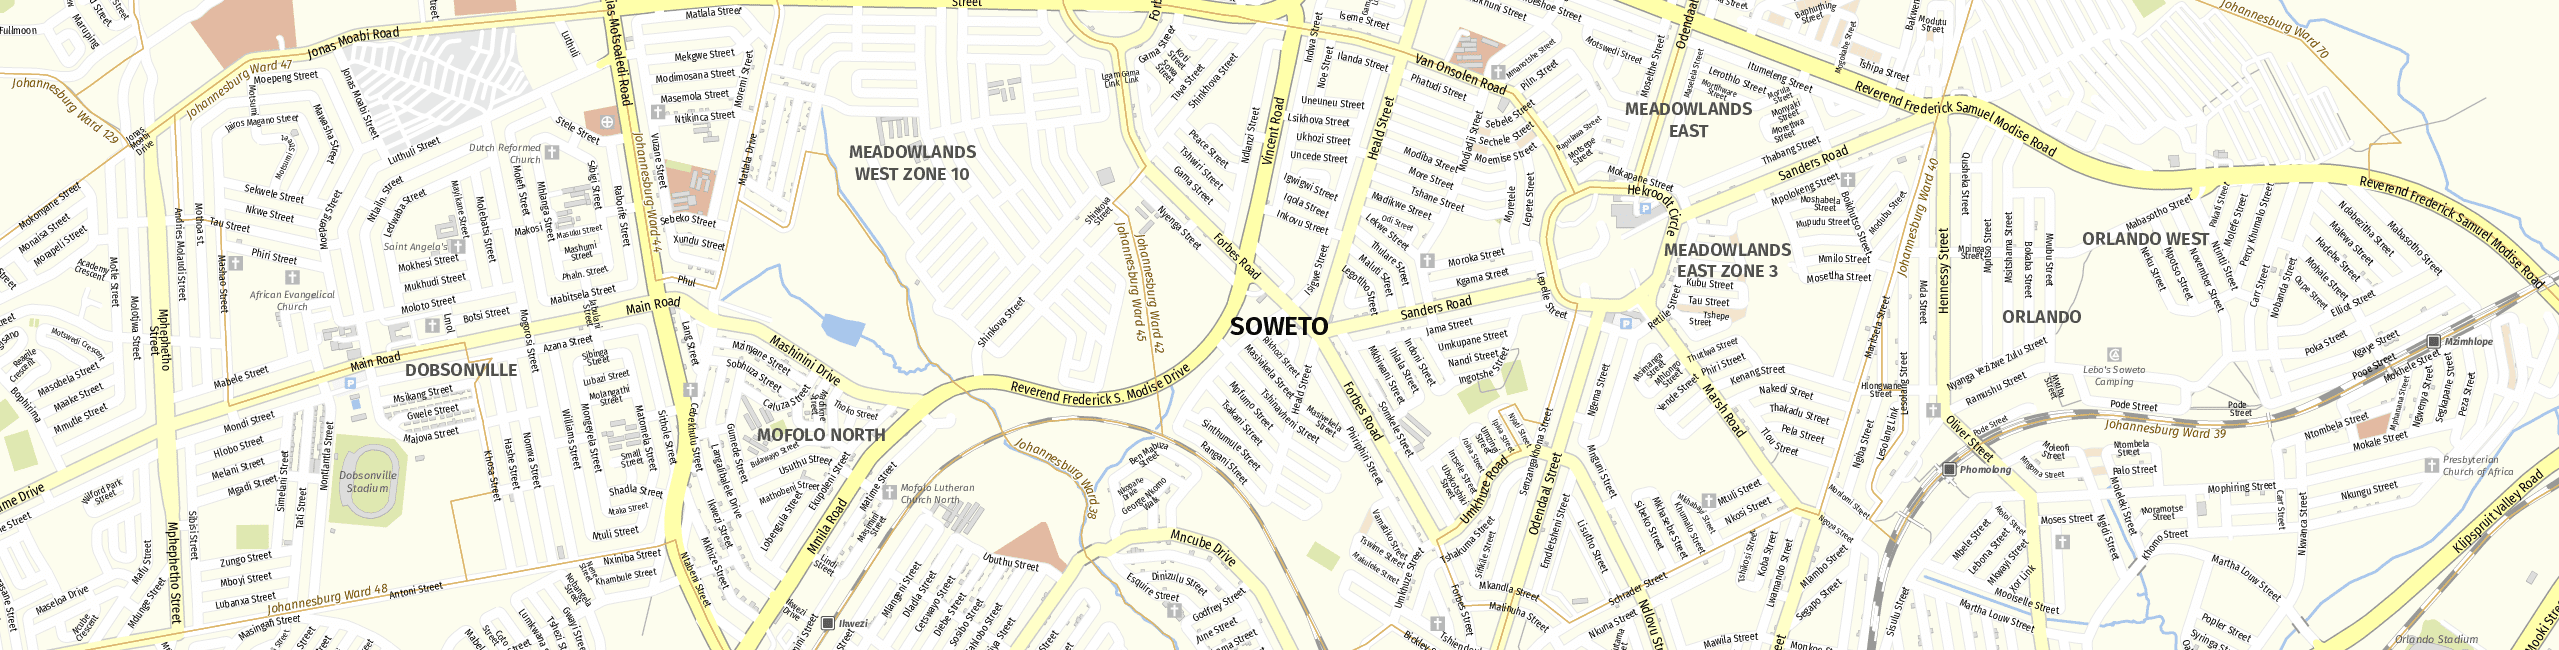 Stadtplan Soweto zum Downloaden.